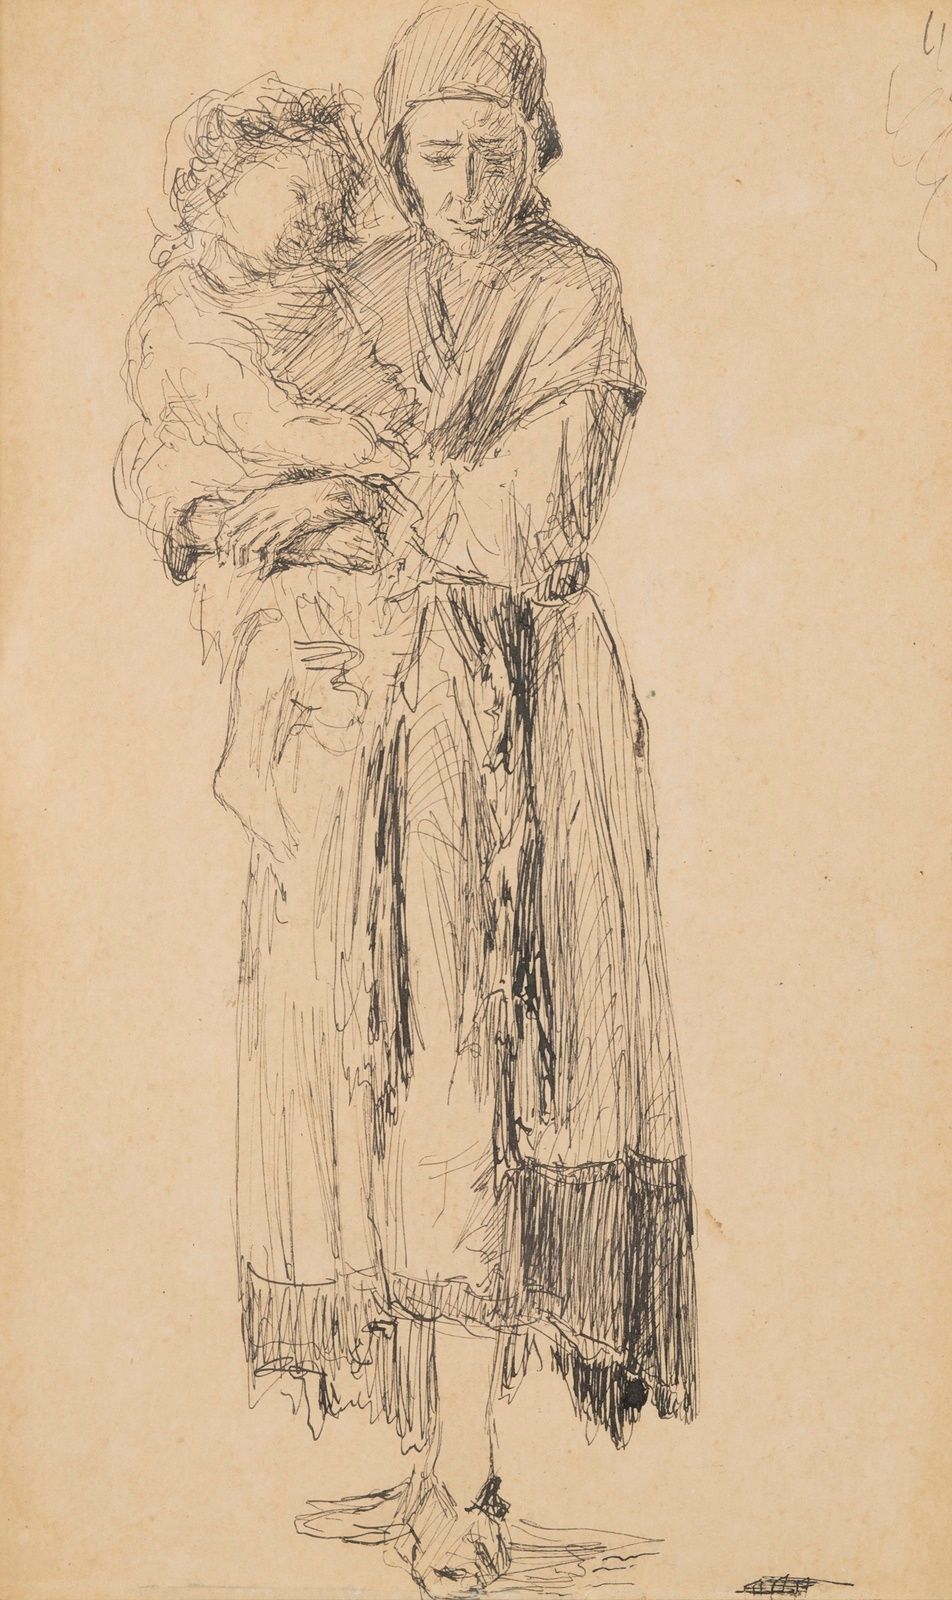 Null Escuela francesa del siglo XIX
Mujer y niño
Tinta
18 x 11 cm.